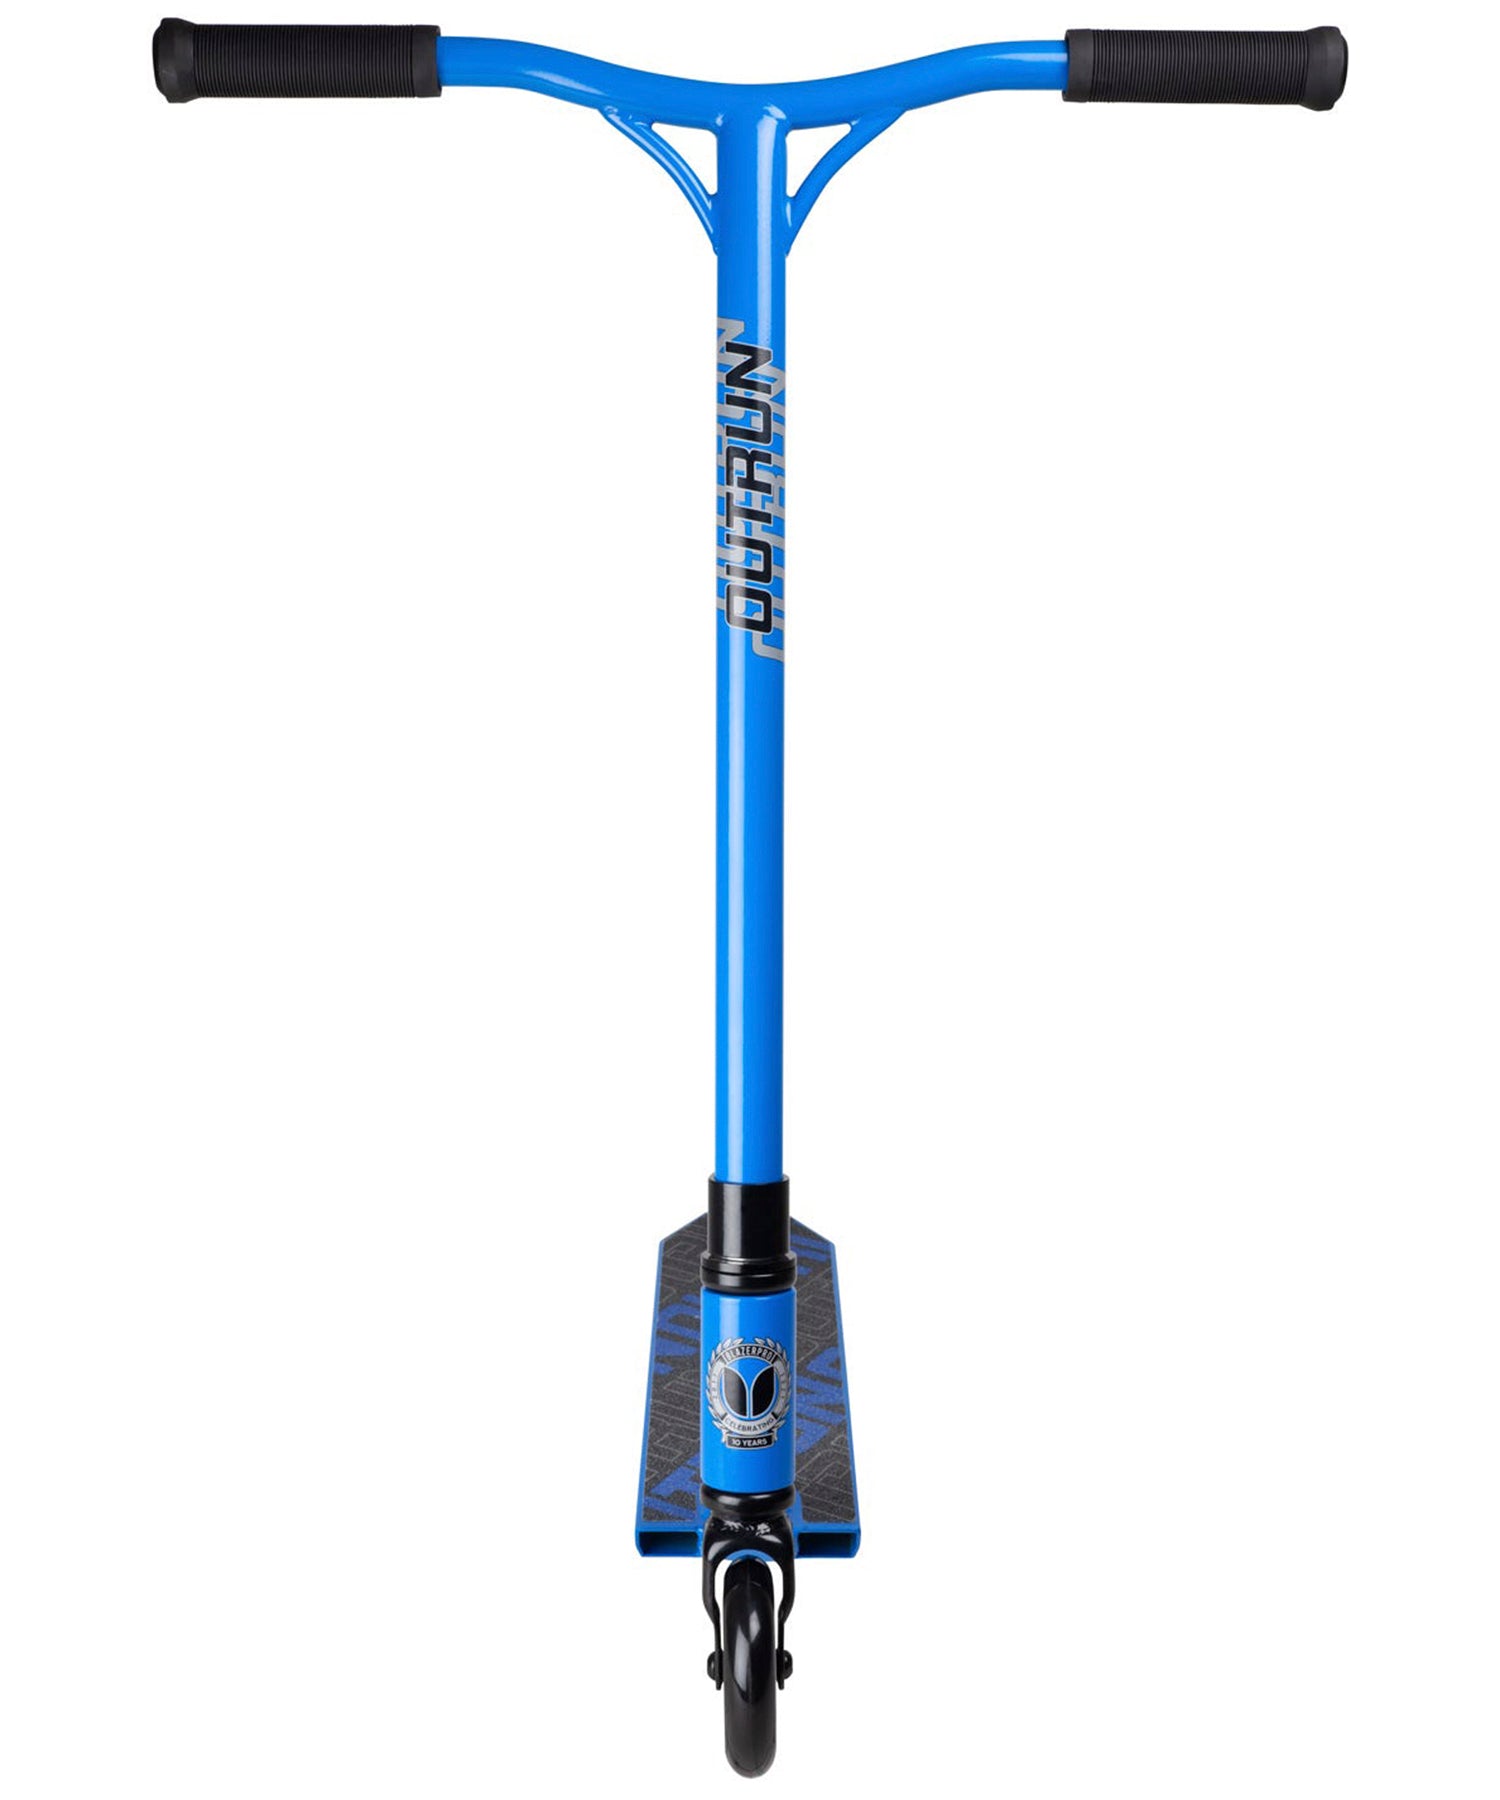 blazer-pro-scooter-completo-outrun-2-color azul-acero-y-aluminio-modelo-profesional-listo-para-patinar